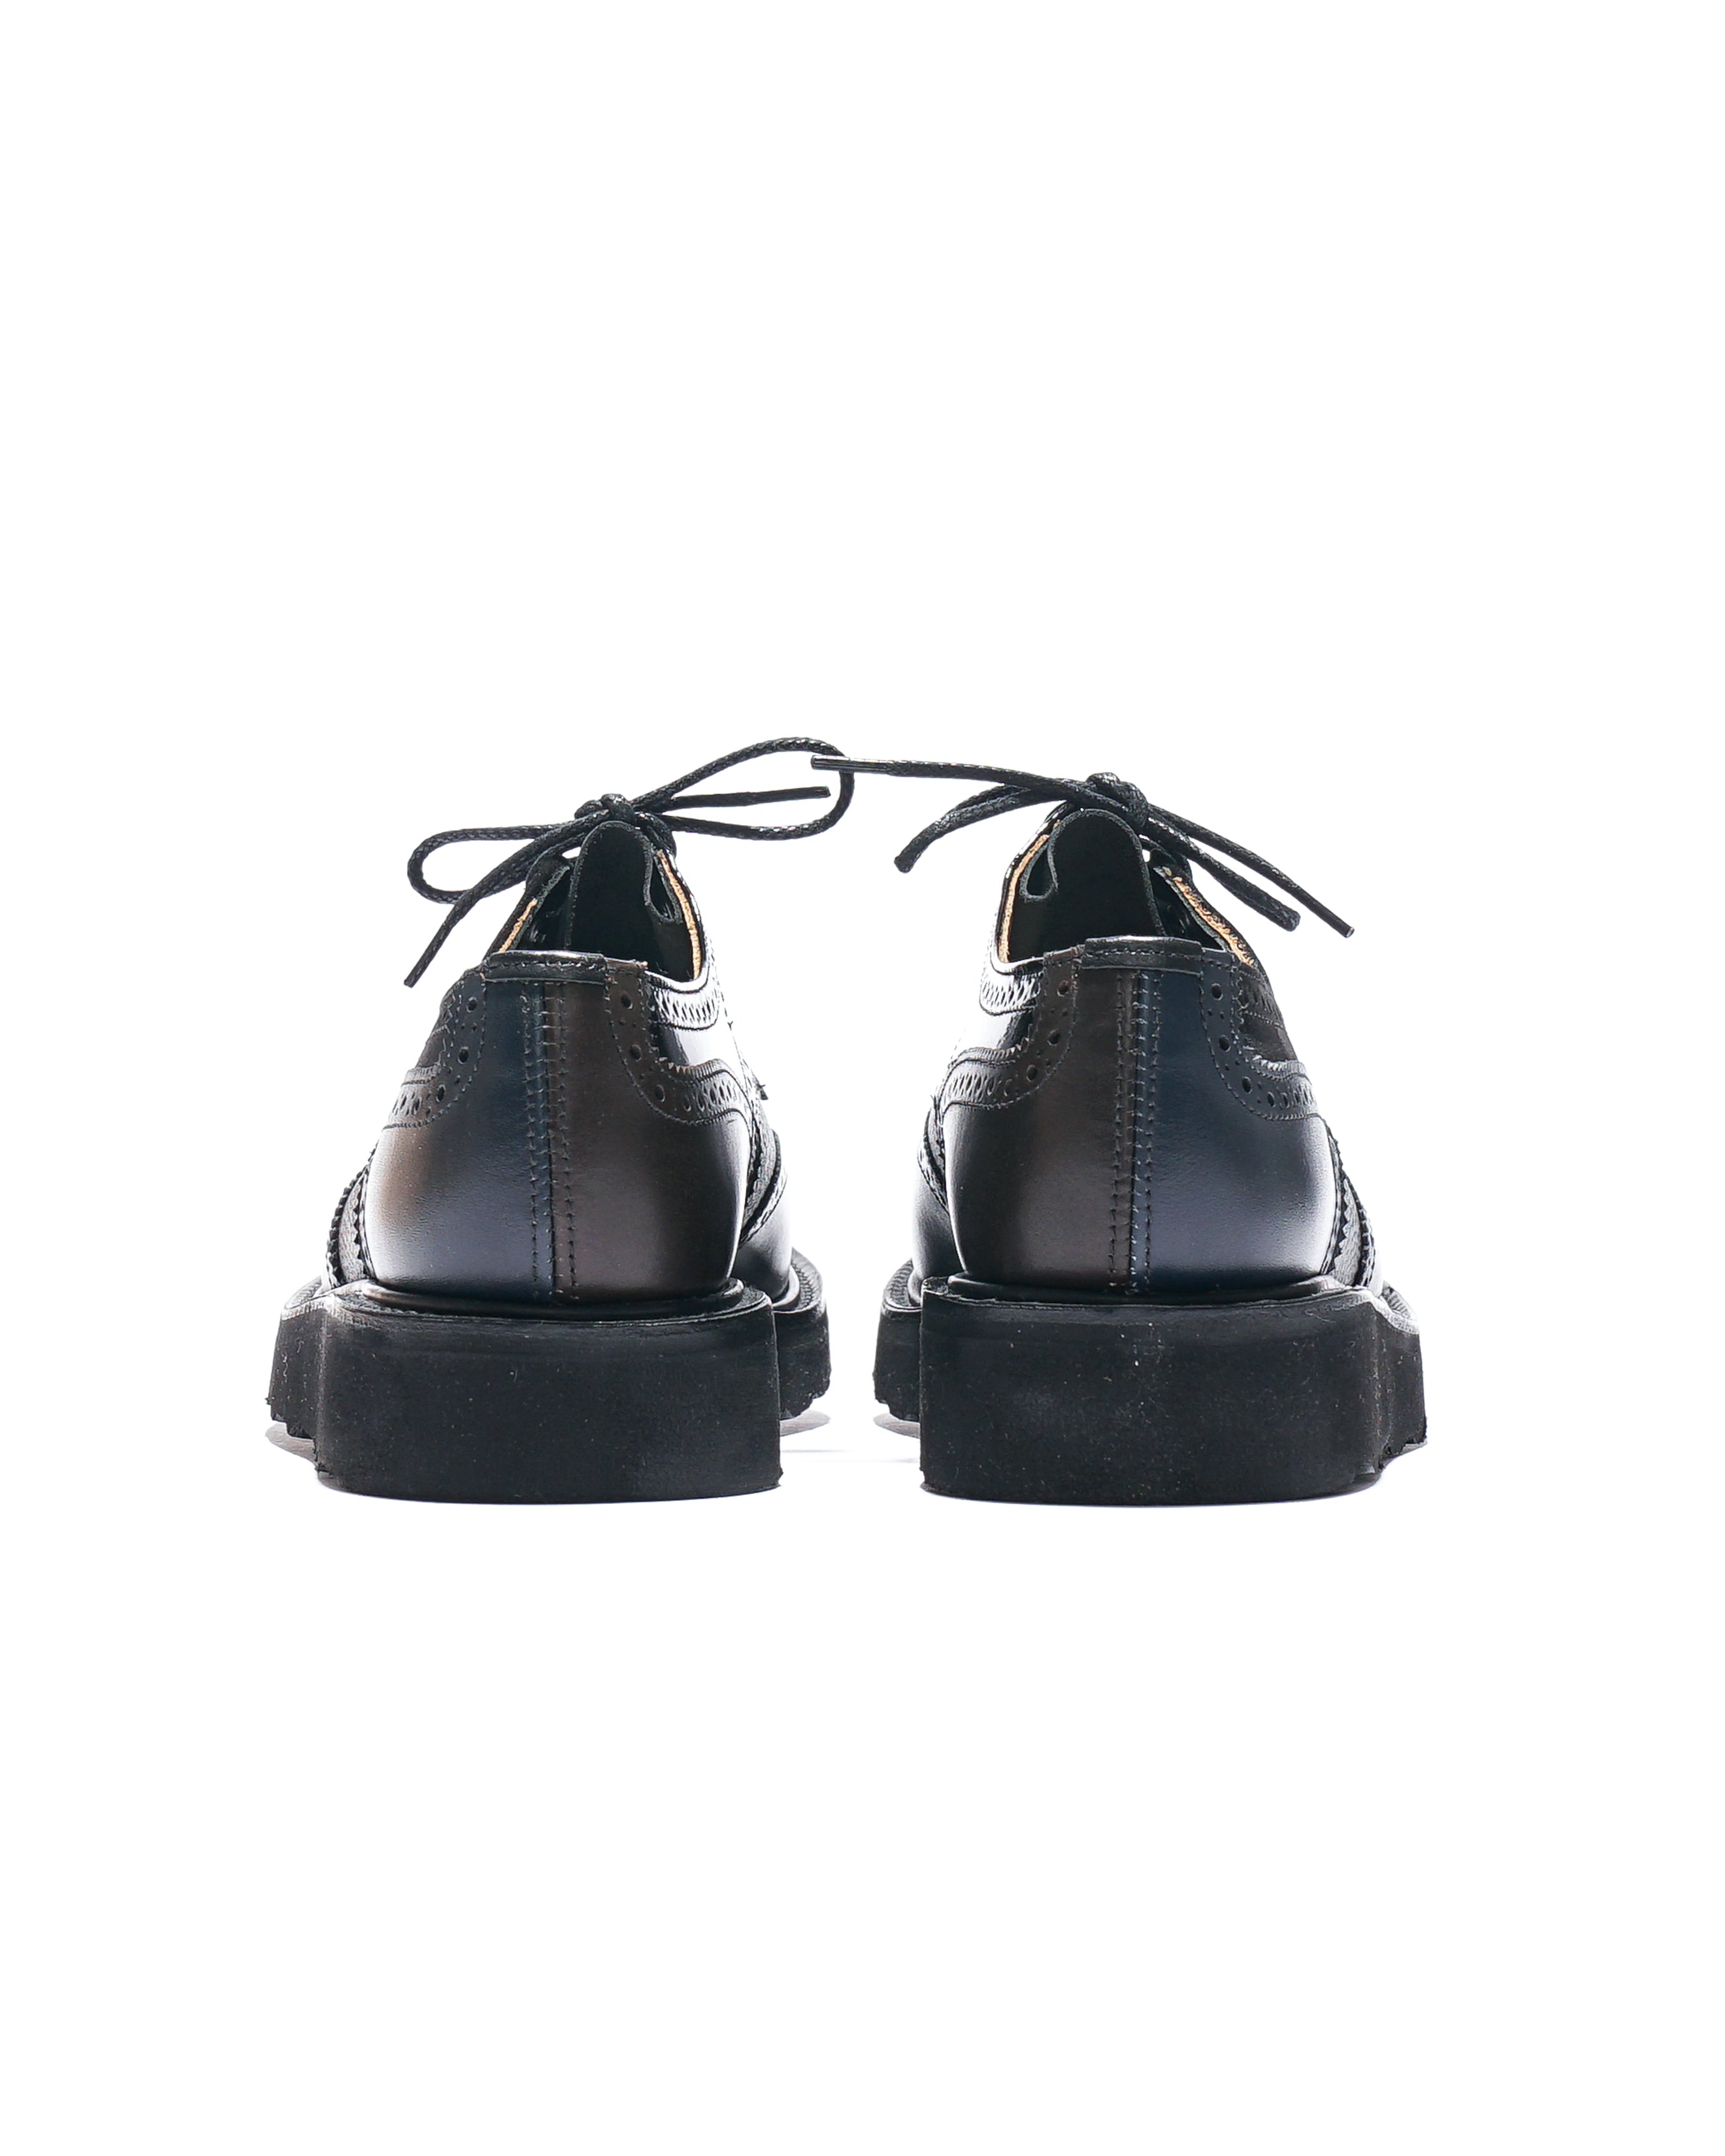 EG x Tricker's - Women's Brogue Shoe - Black - Multi Tone - Morflex Sole